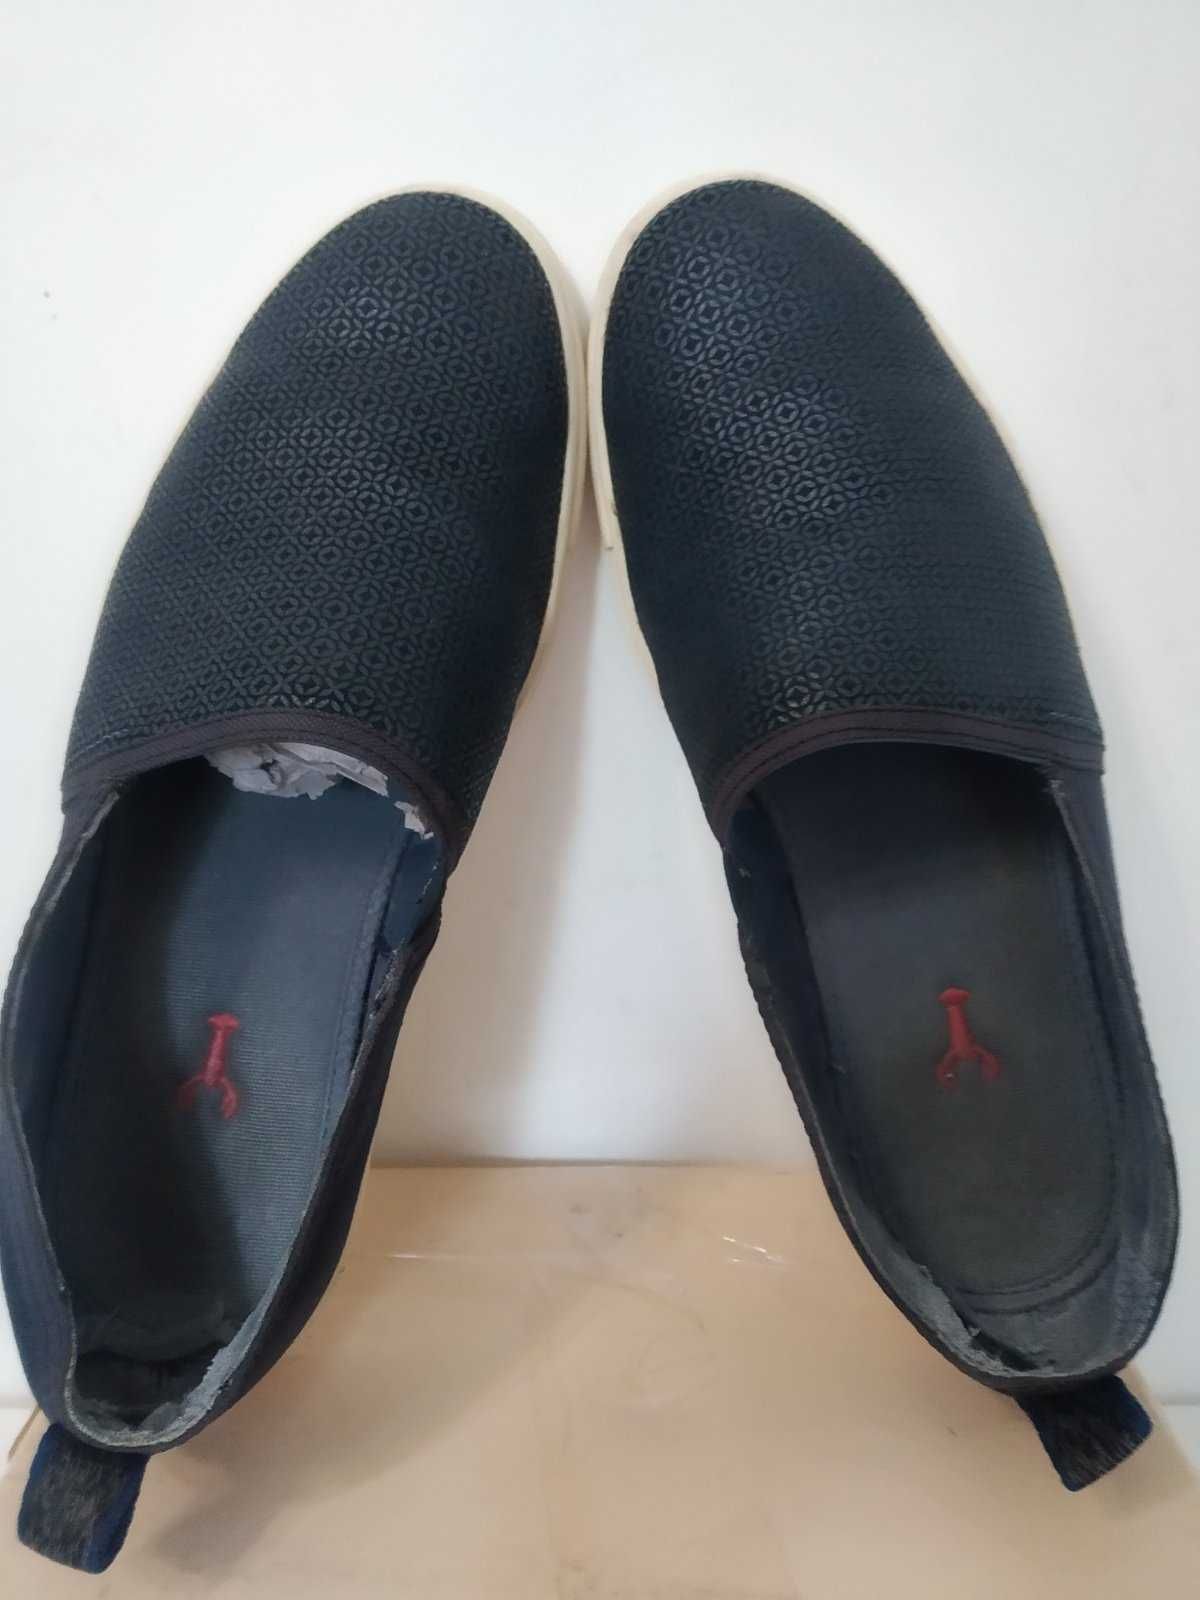 Мужские слипоны мокасины туфли Ted Baker, оригинал, кожа, 43 размер